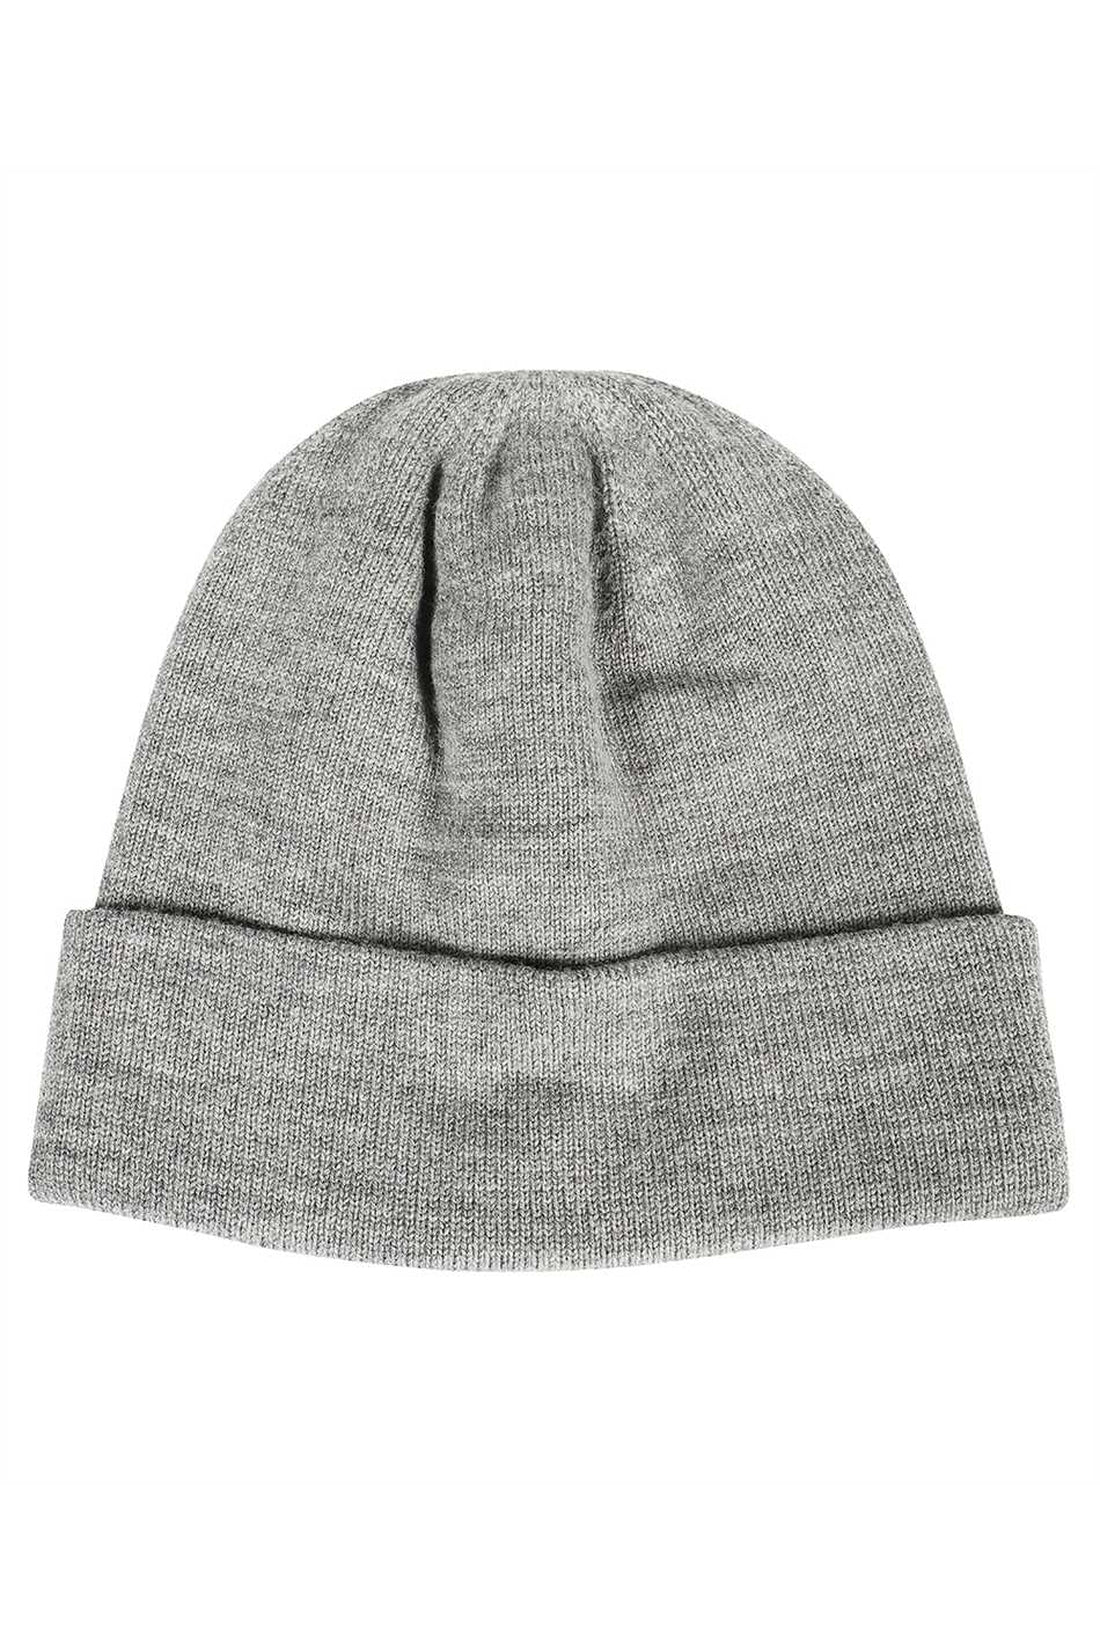 Les Deux-OUTLET-SALE-Knitted hat-ARCHIVIST